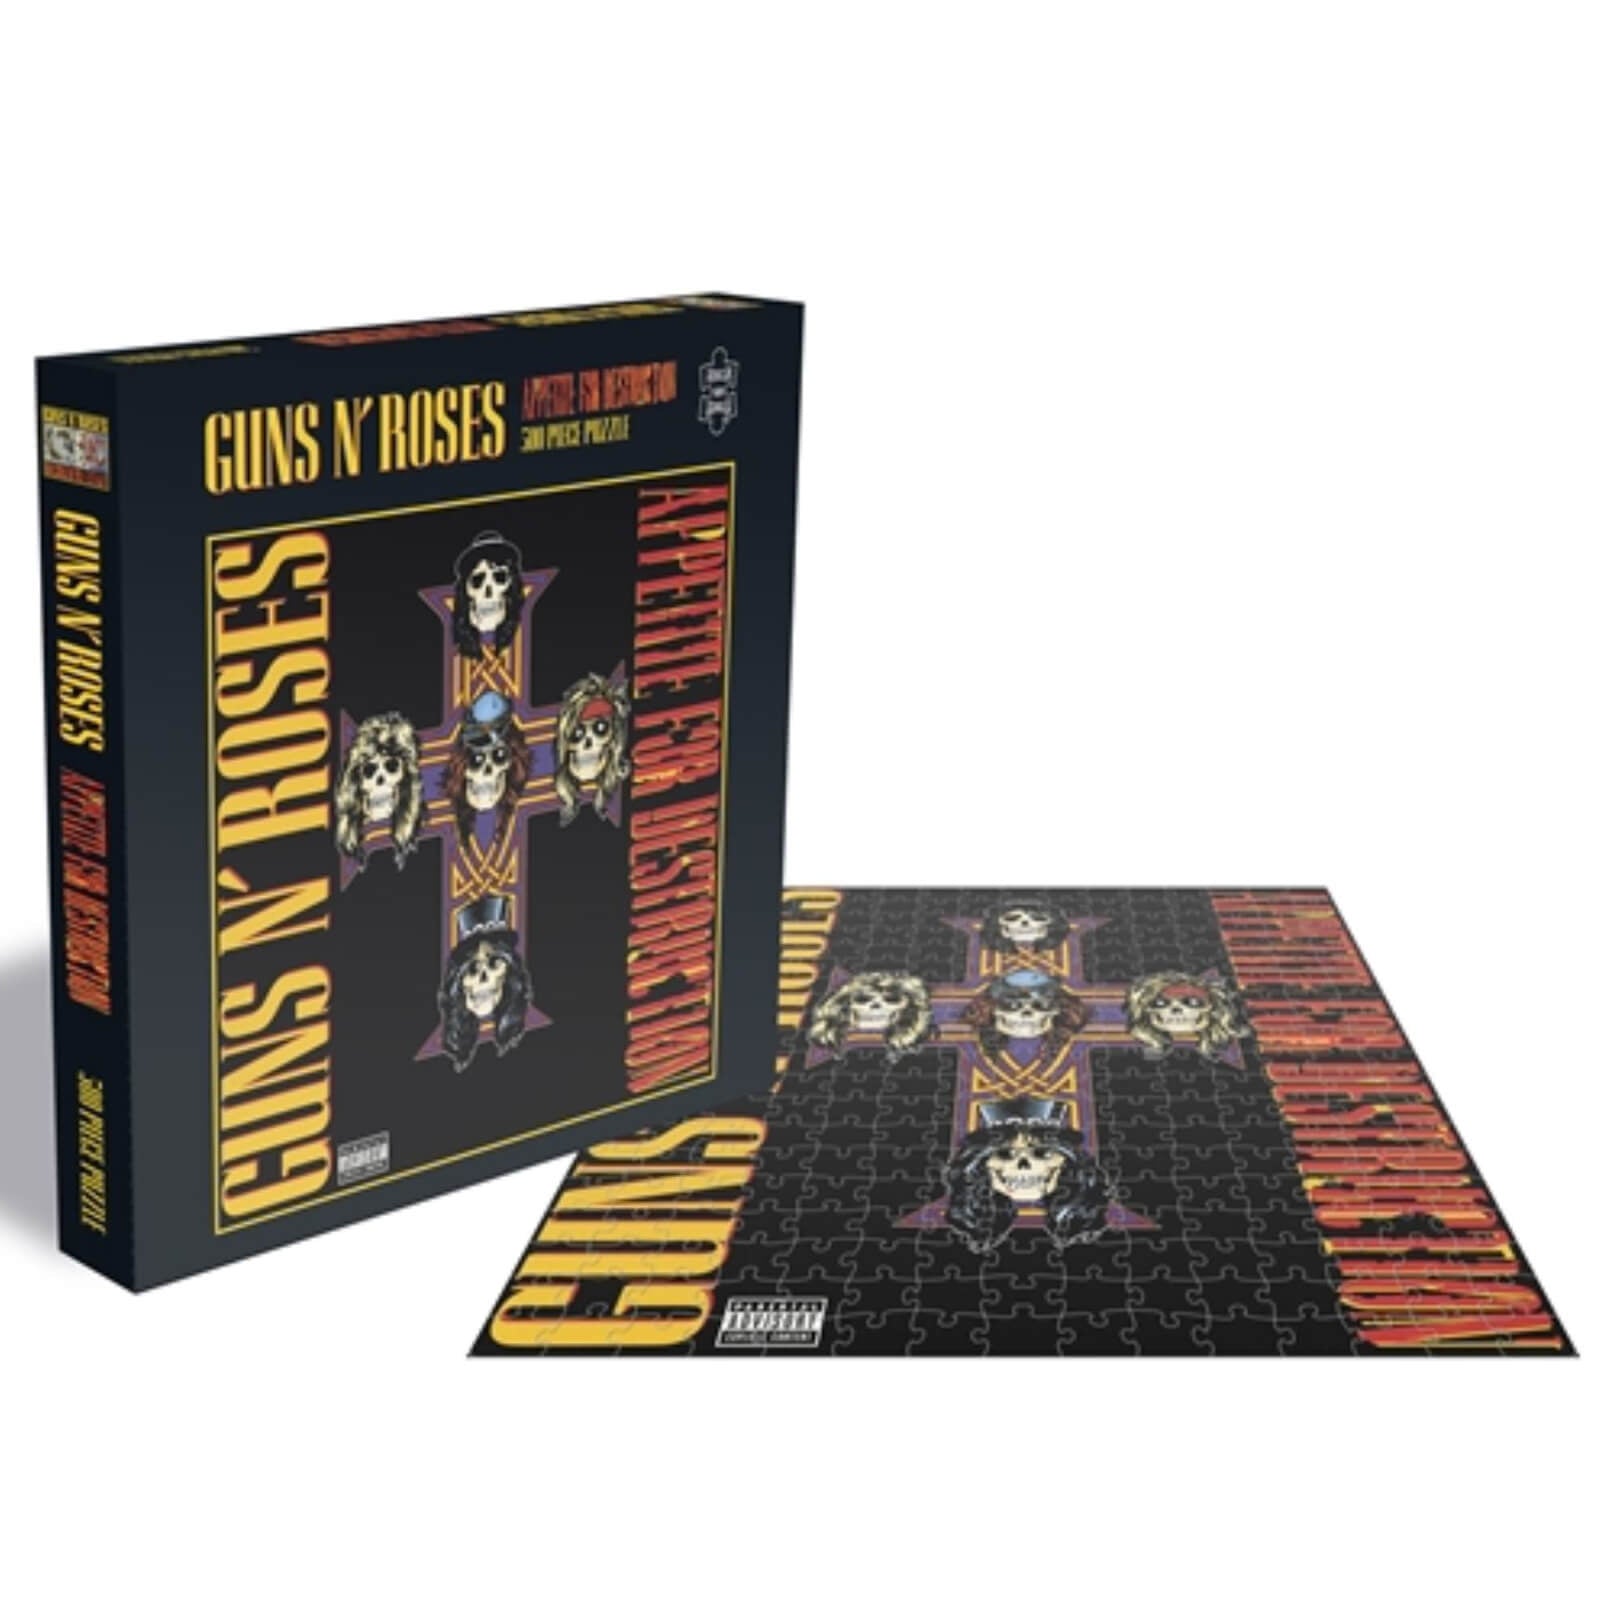 Guns N’ Roses - Appetite For Destruction - 500 Piece Jigsaw Puzzle